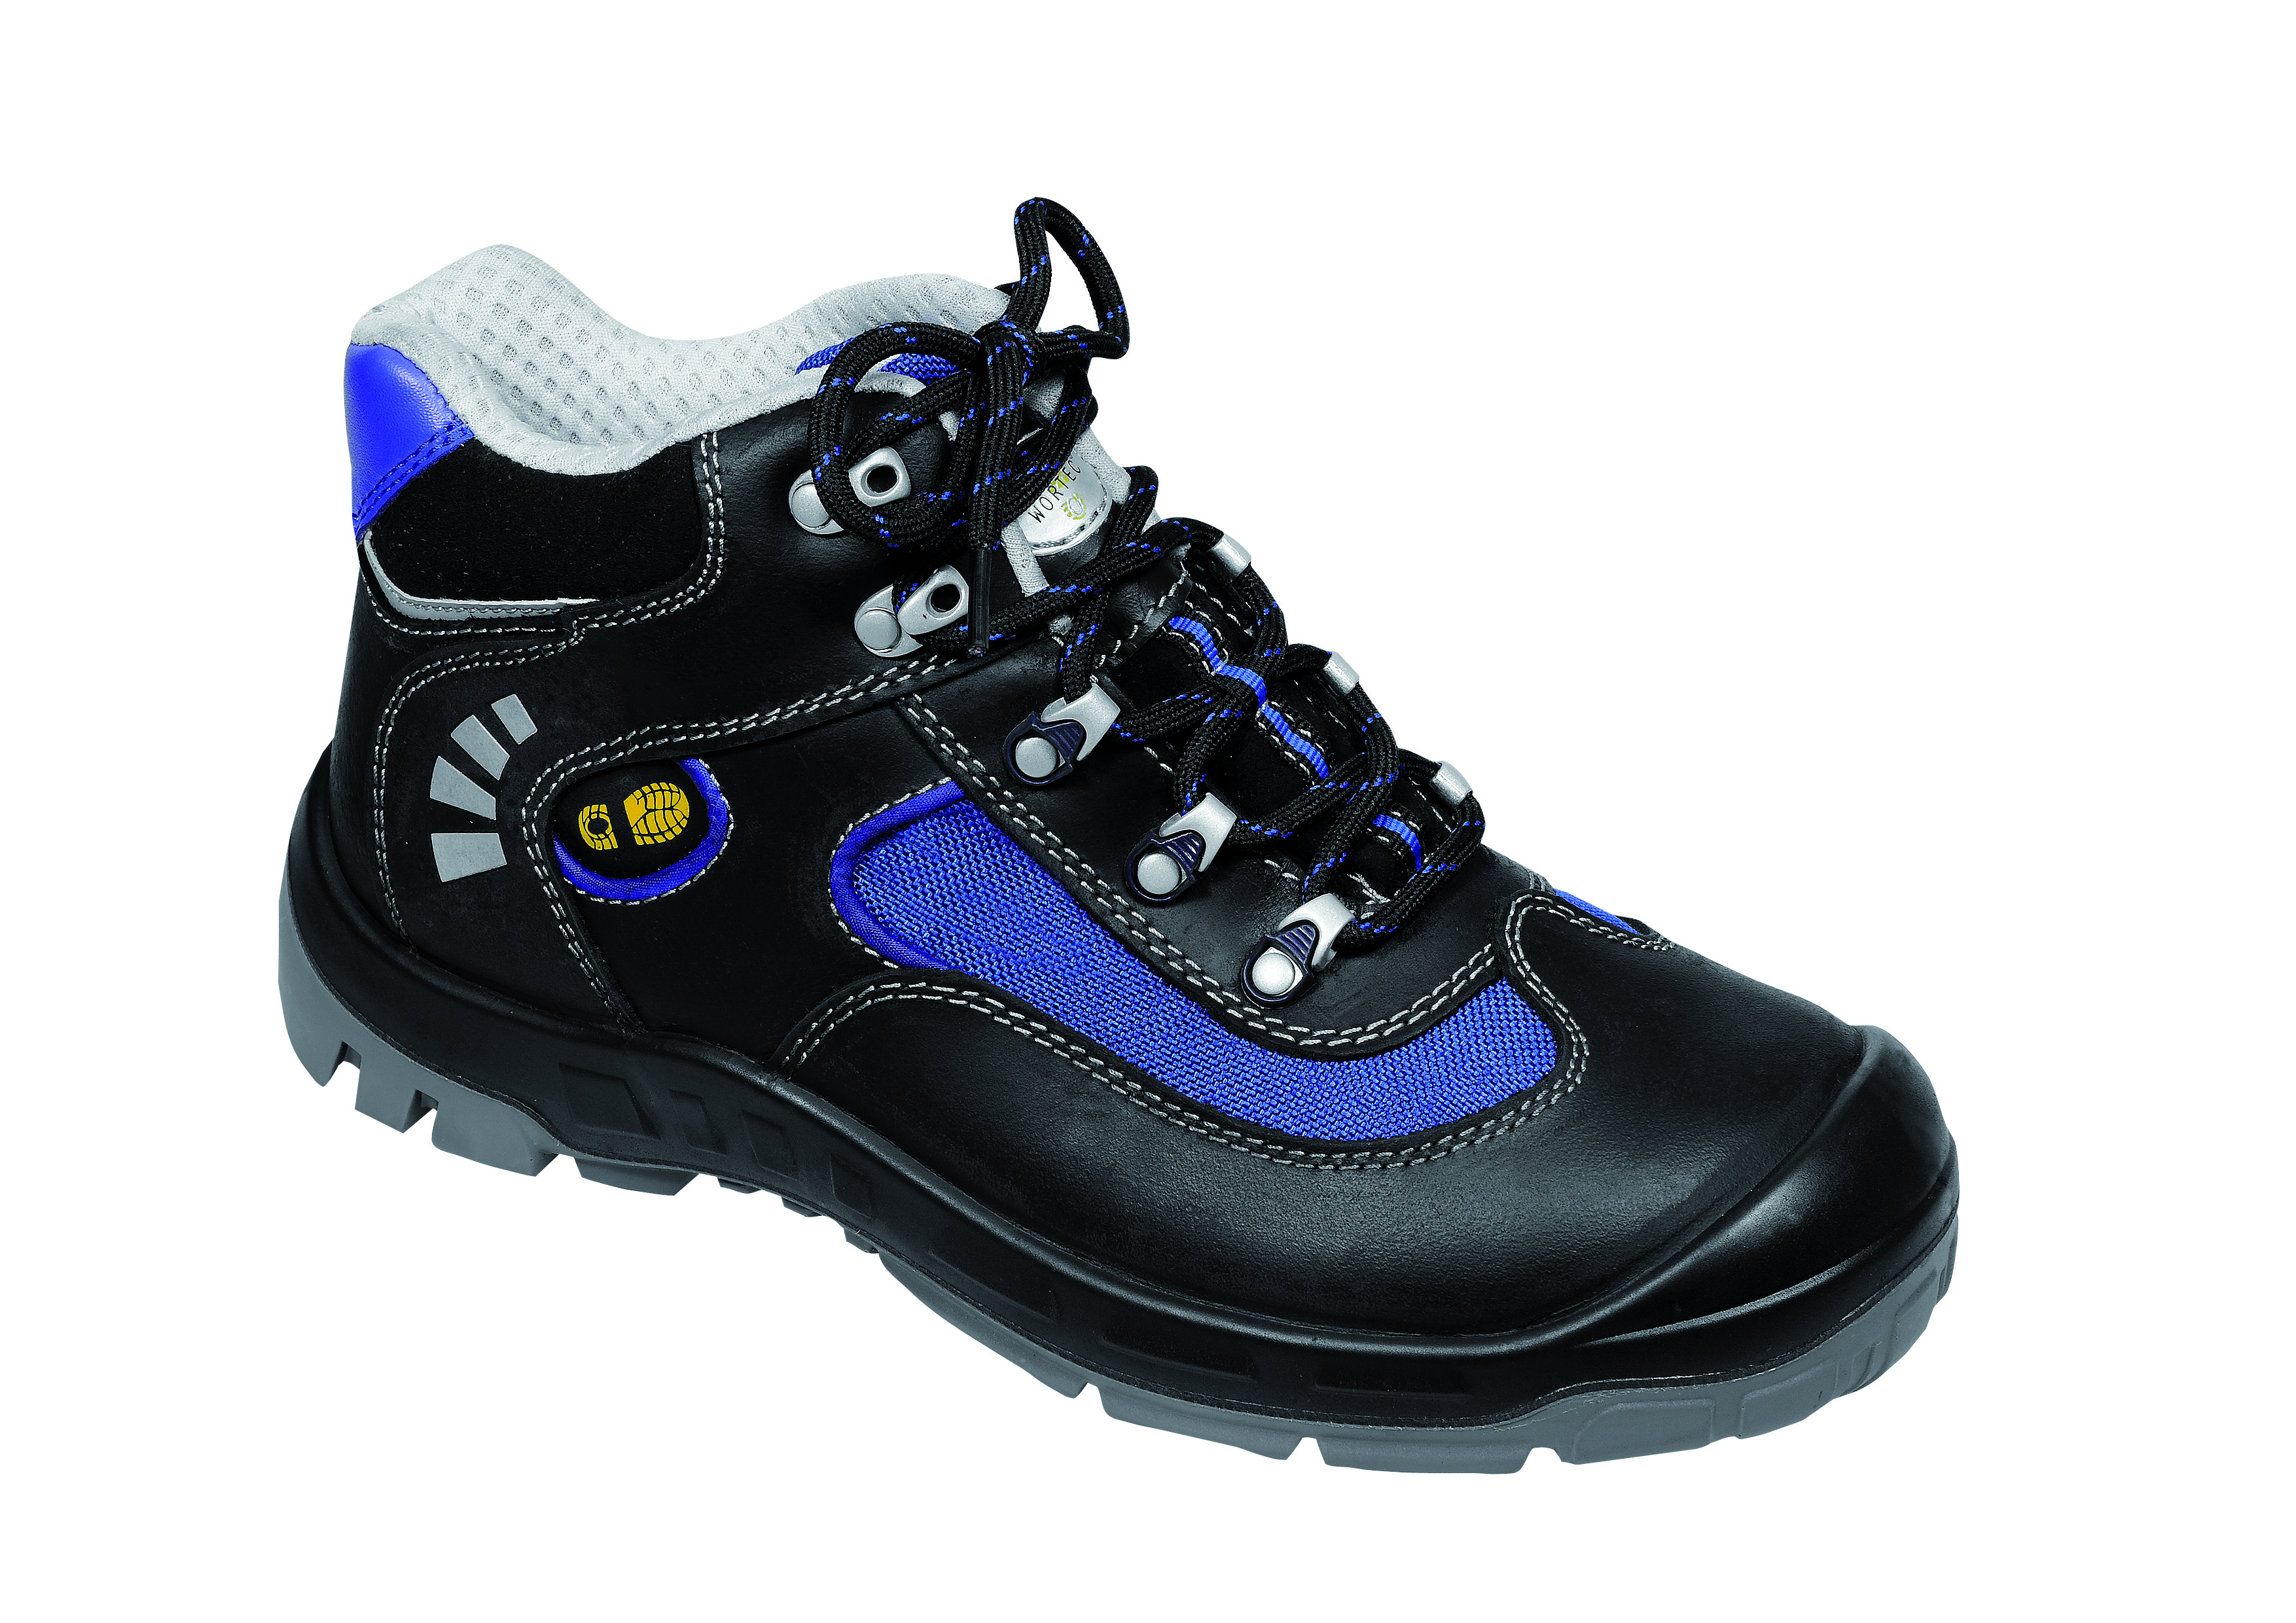 WORTEC-Footwear-ALEX, S2-Sicherheits-Arbeits-Berufs-Schuhe, Schnürstiefel, schwarz/blau